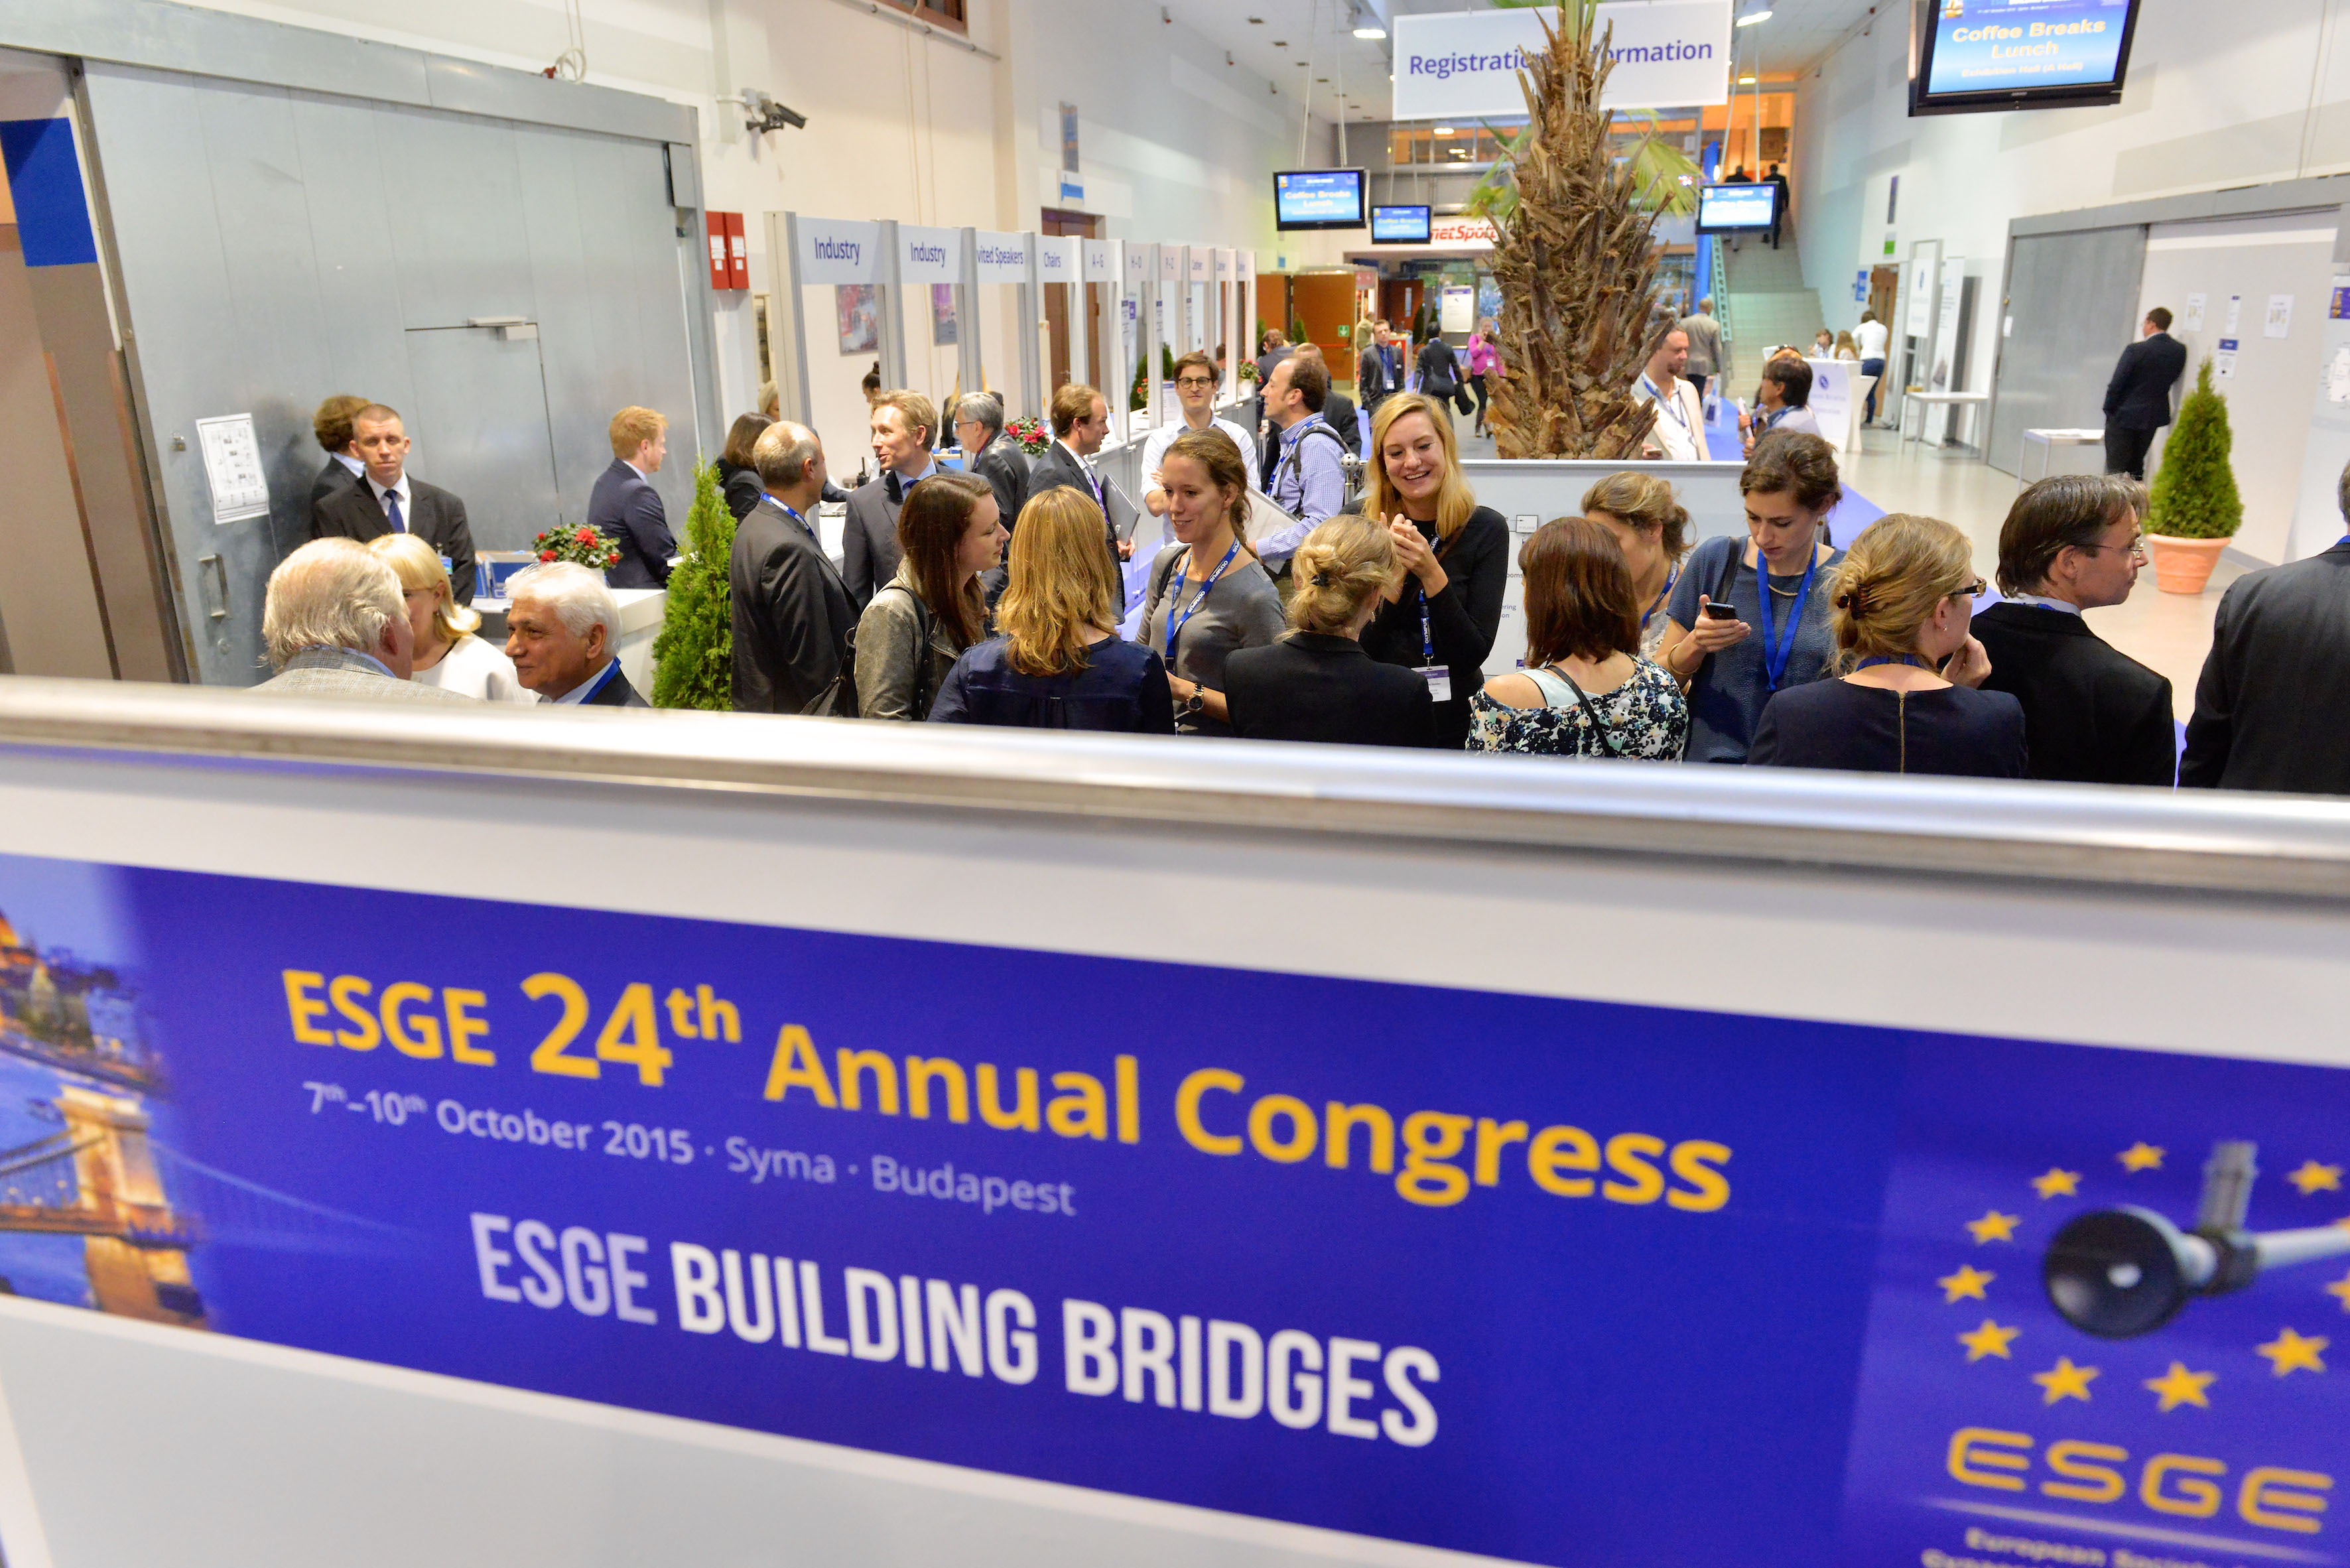 Budapest congress hall / ESGE congress 2015